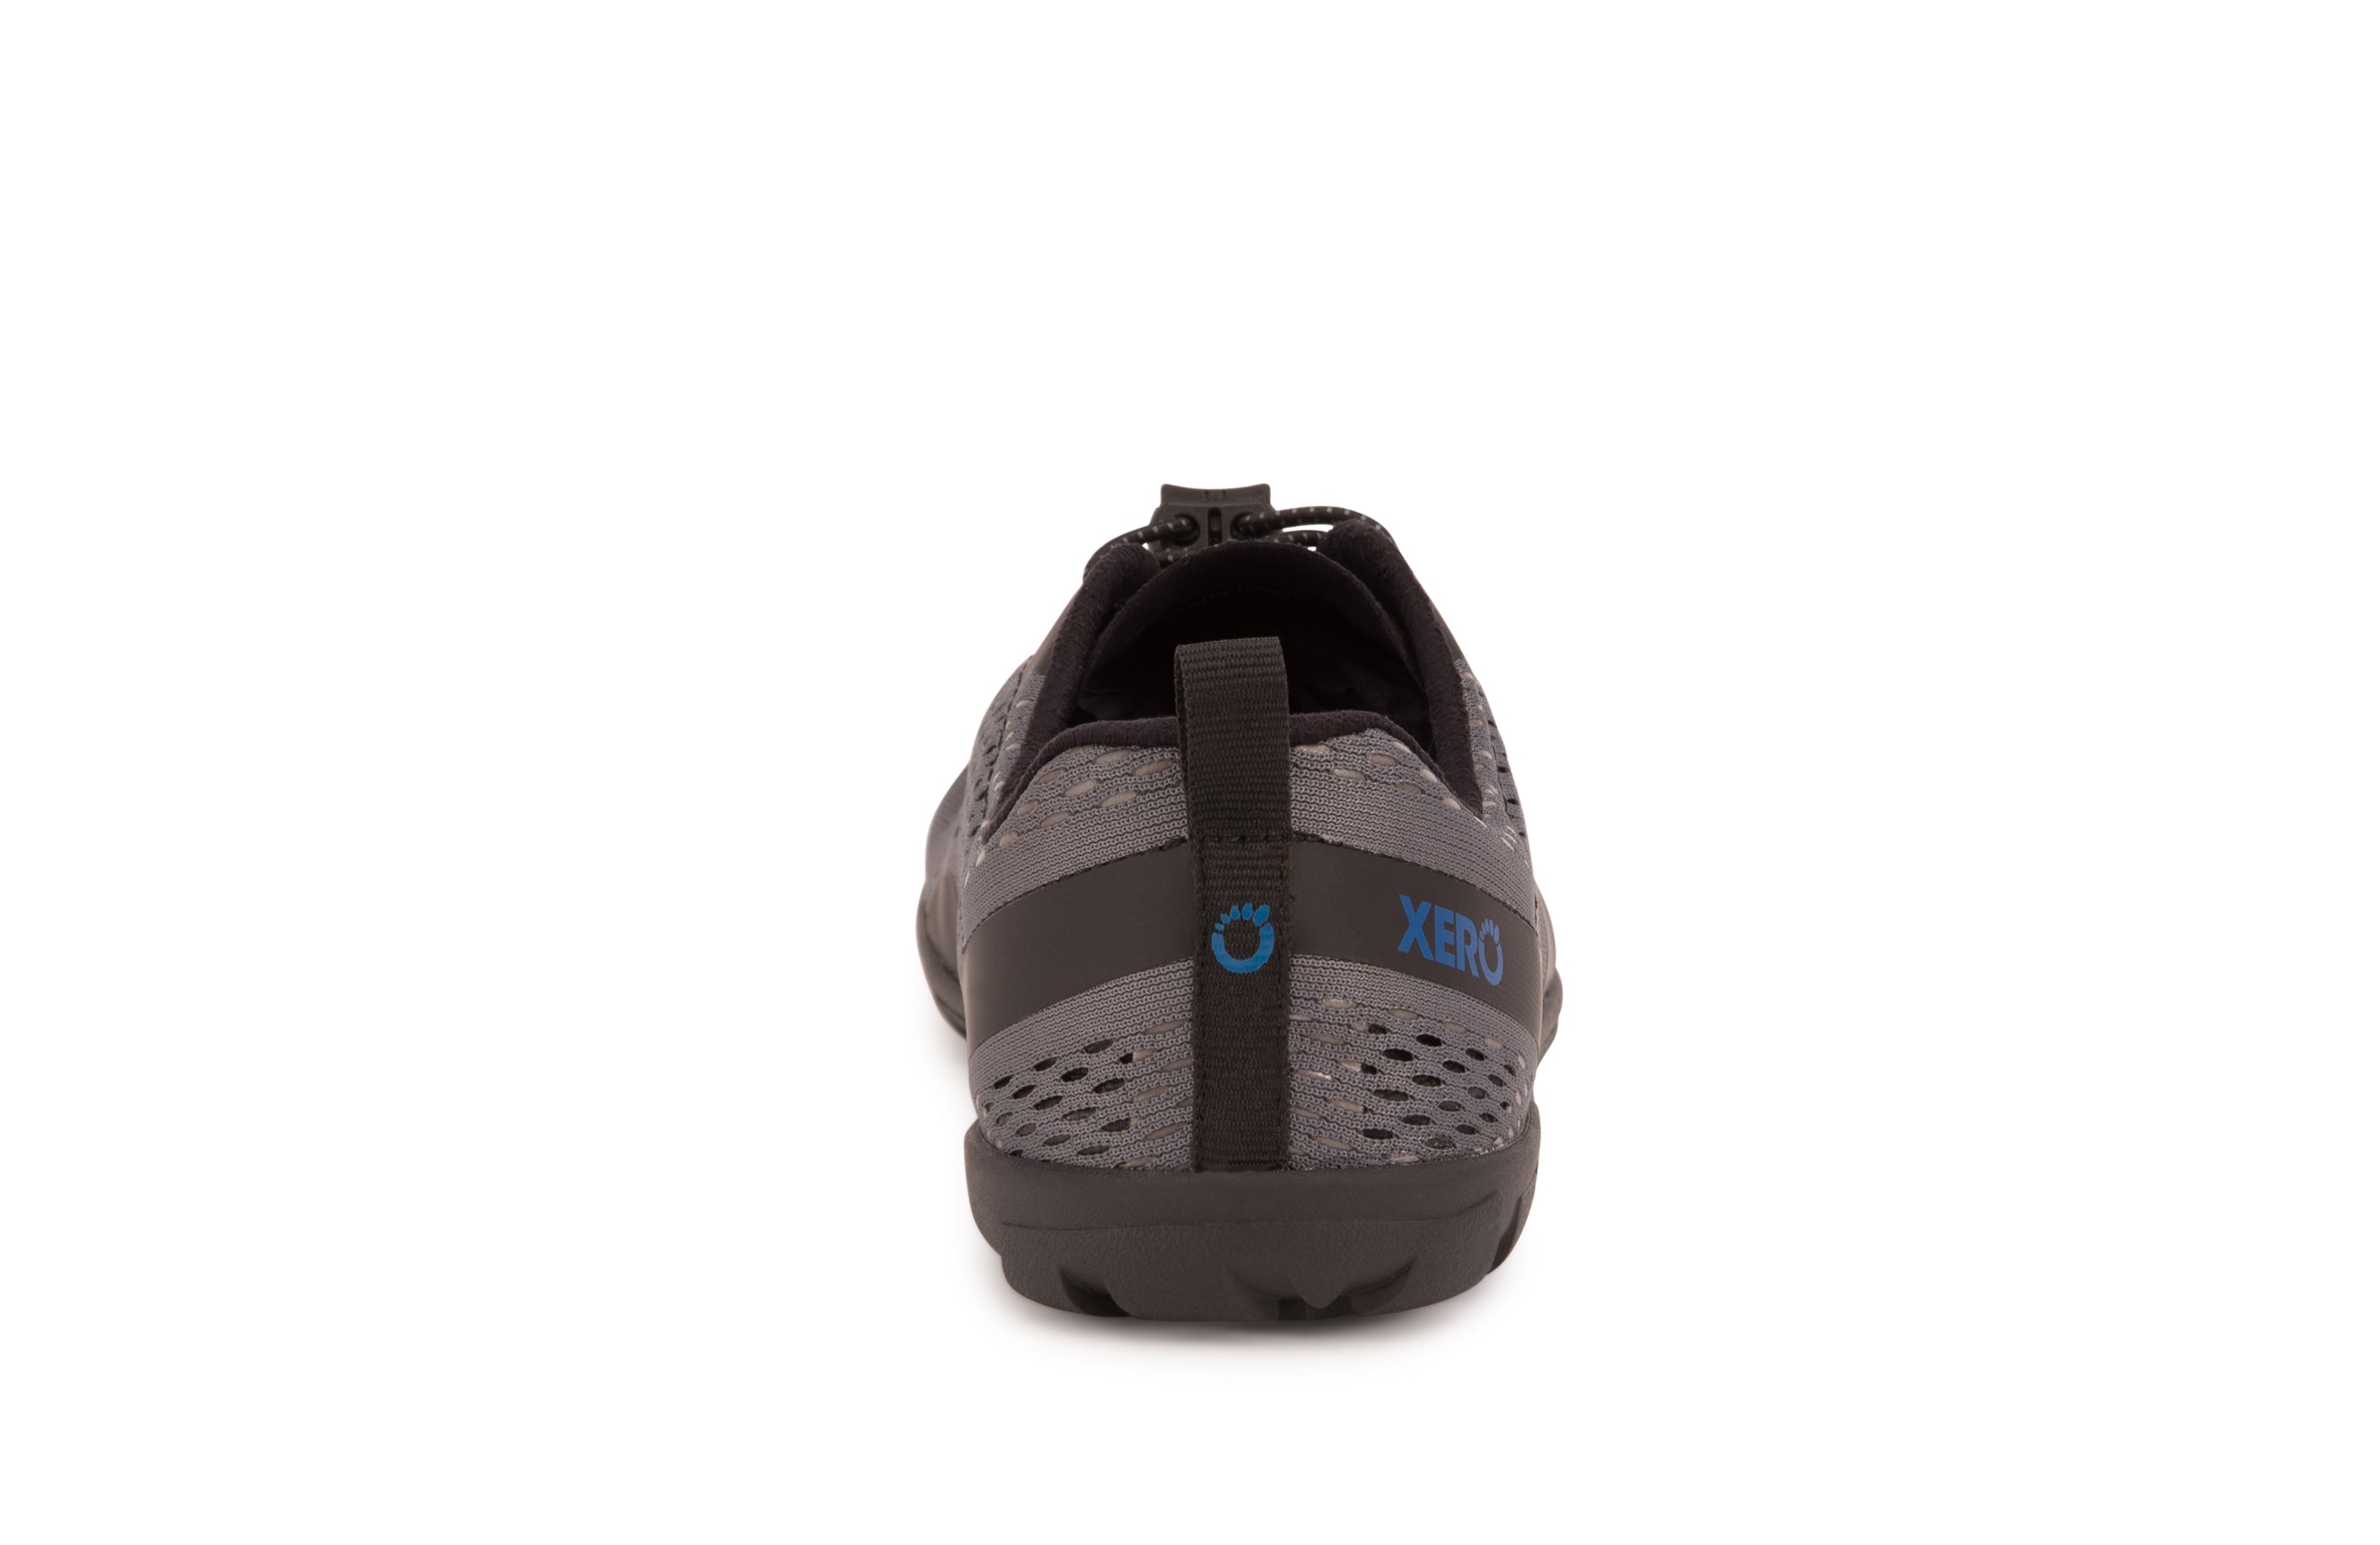 Xero Shoes Aqua X Sport barfods vand træningssko til mænd i farven steel gray / blue, bagfra